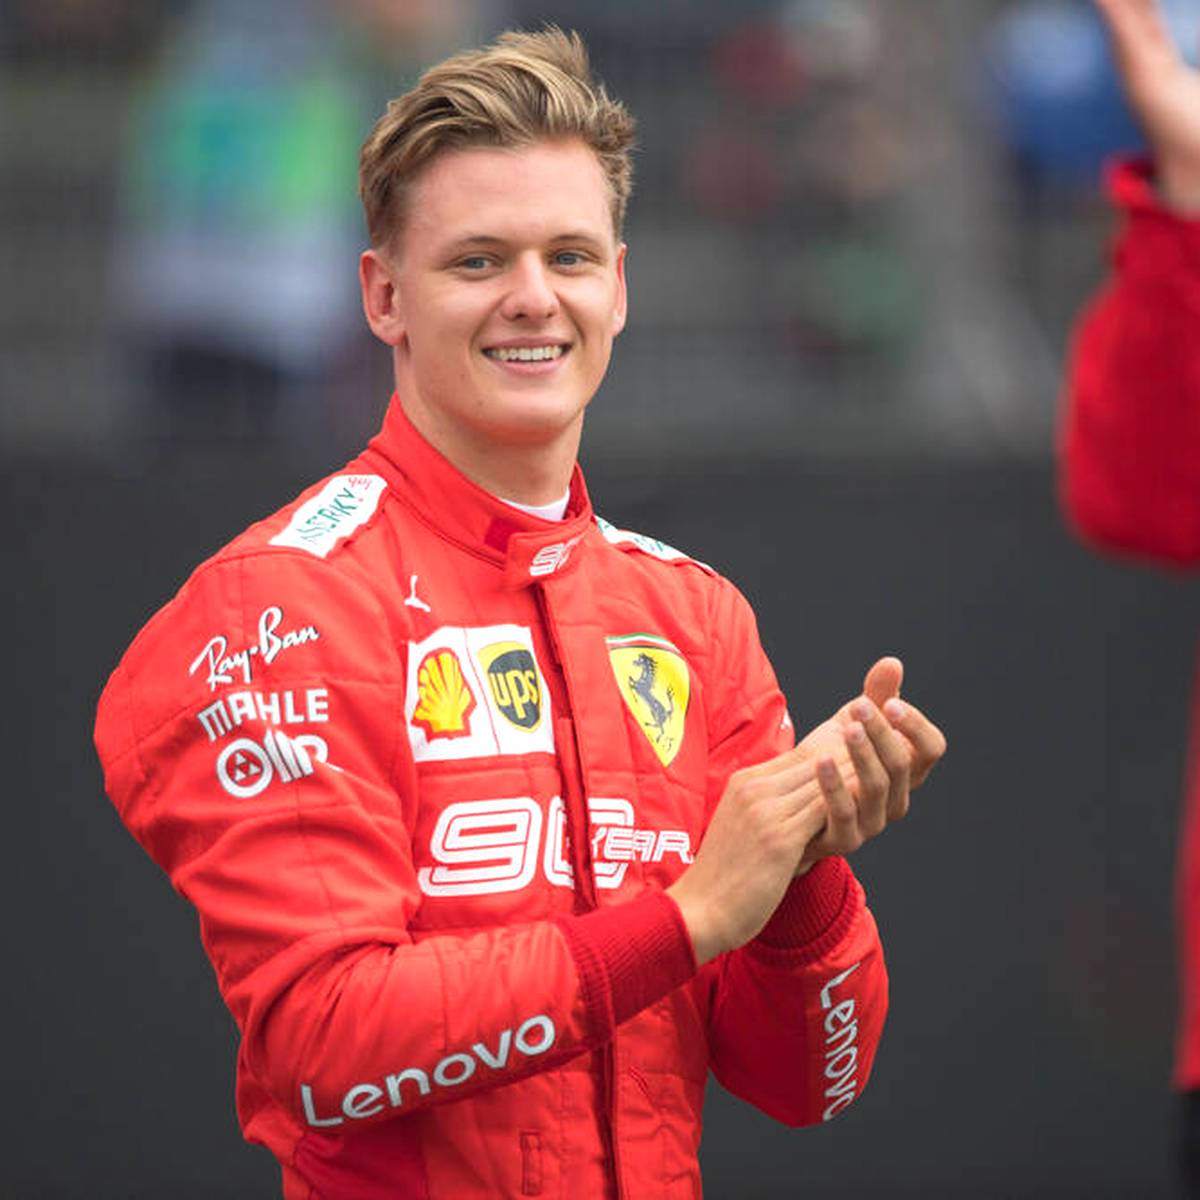 Warum Schumachers Saison von Ferrari abhängig ist